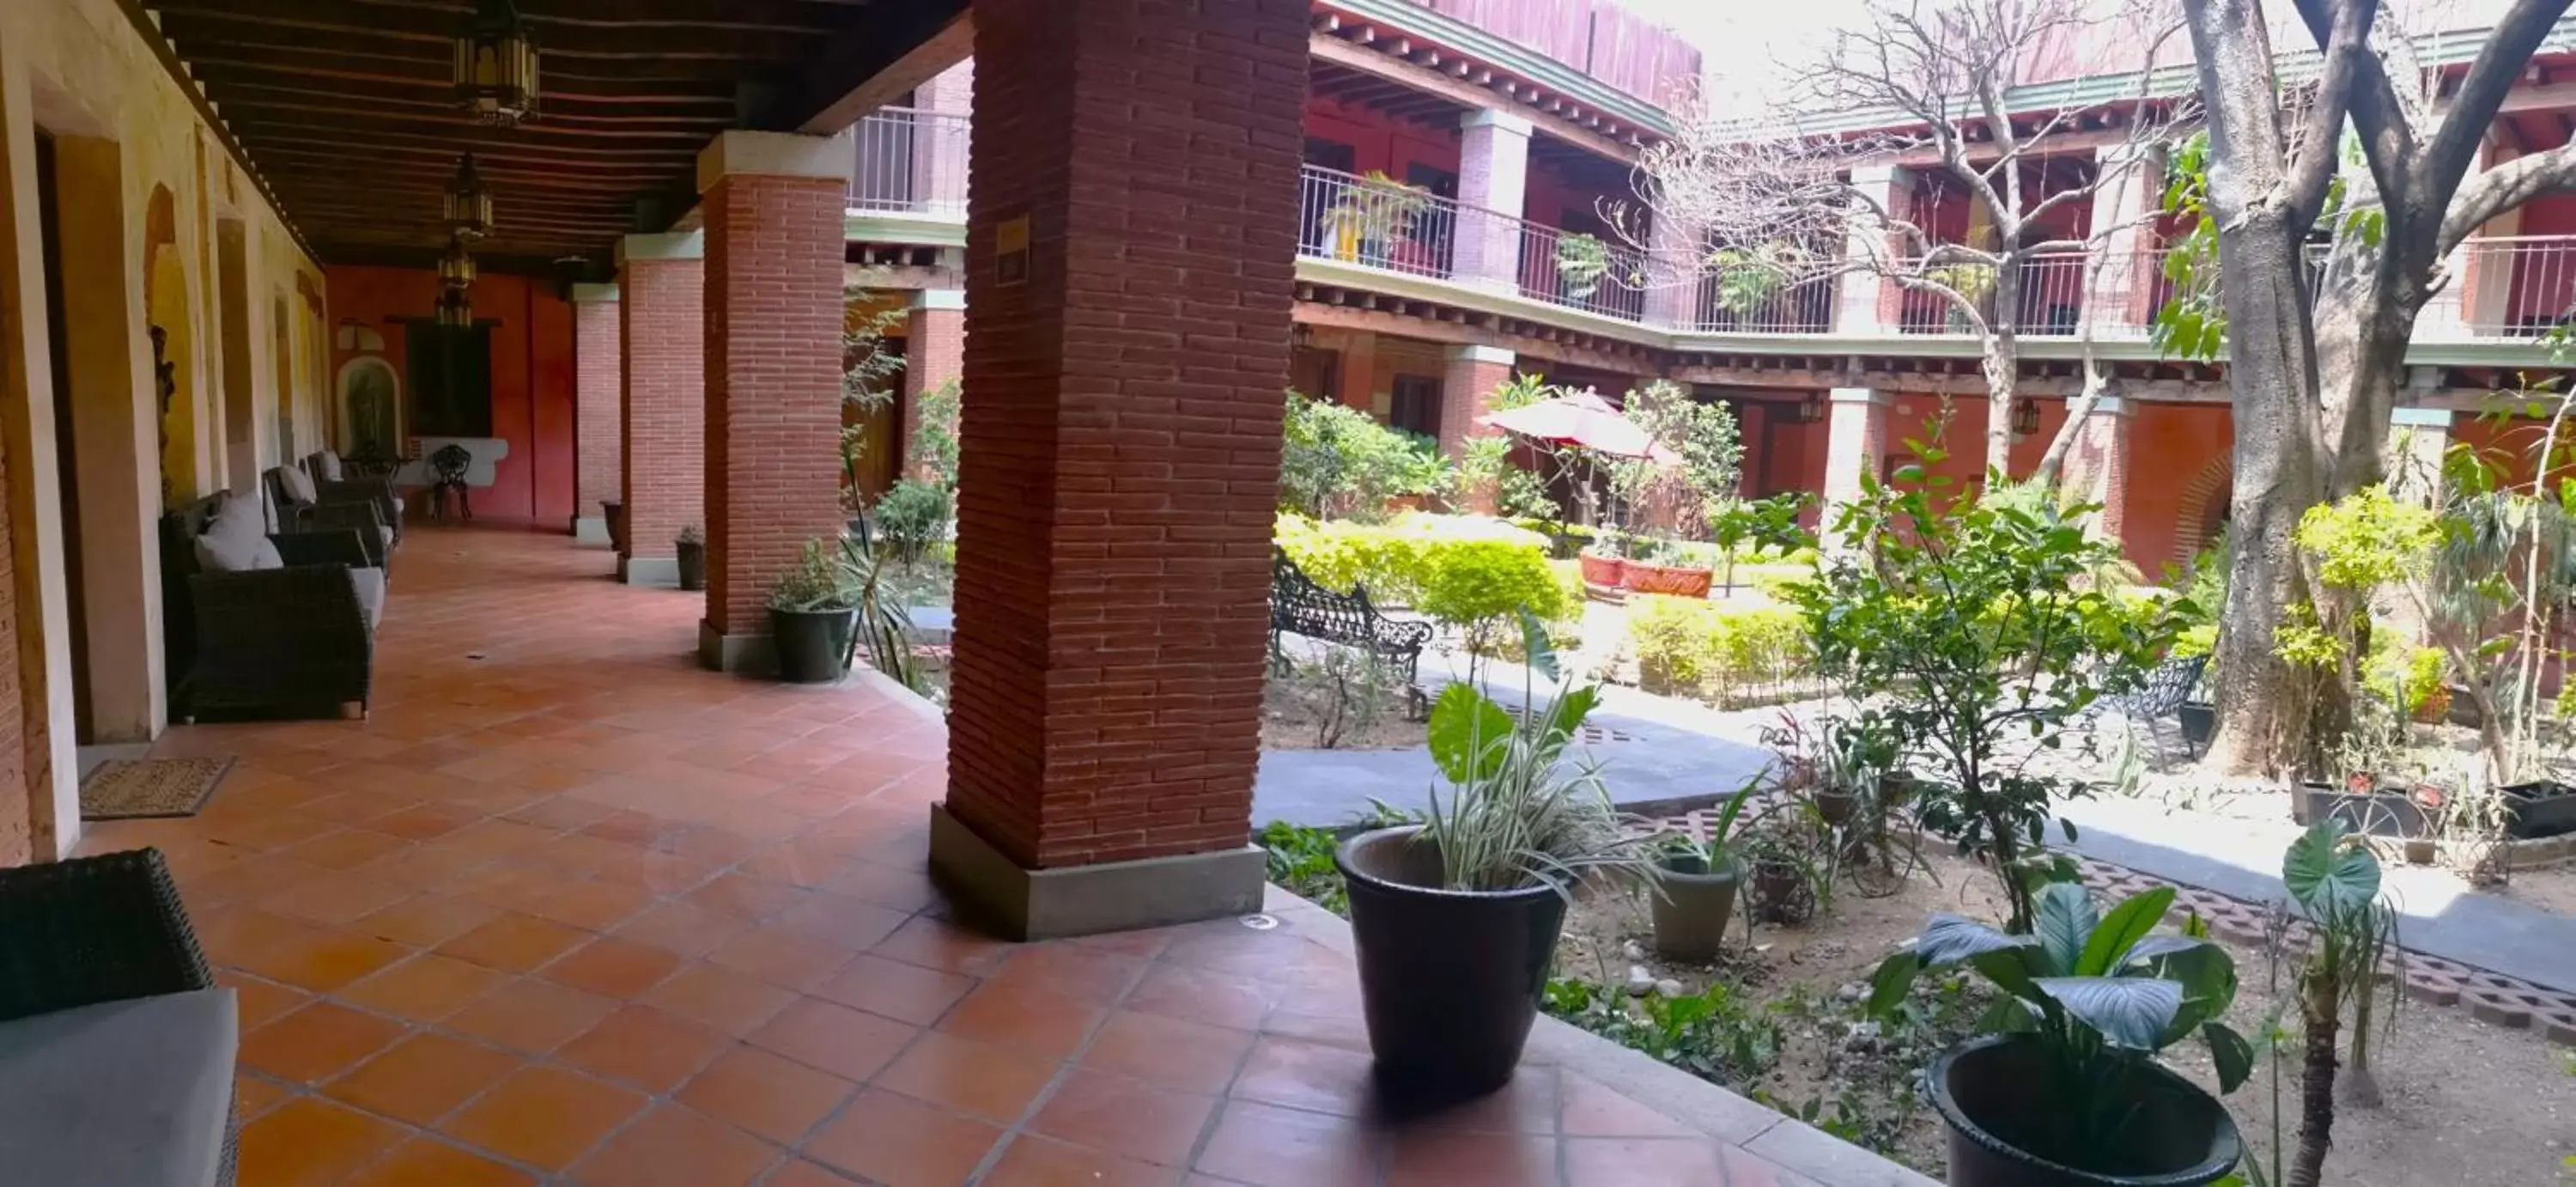 Garden view in Hotel Siglo XVII Art Gallery